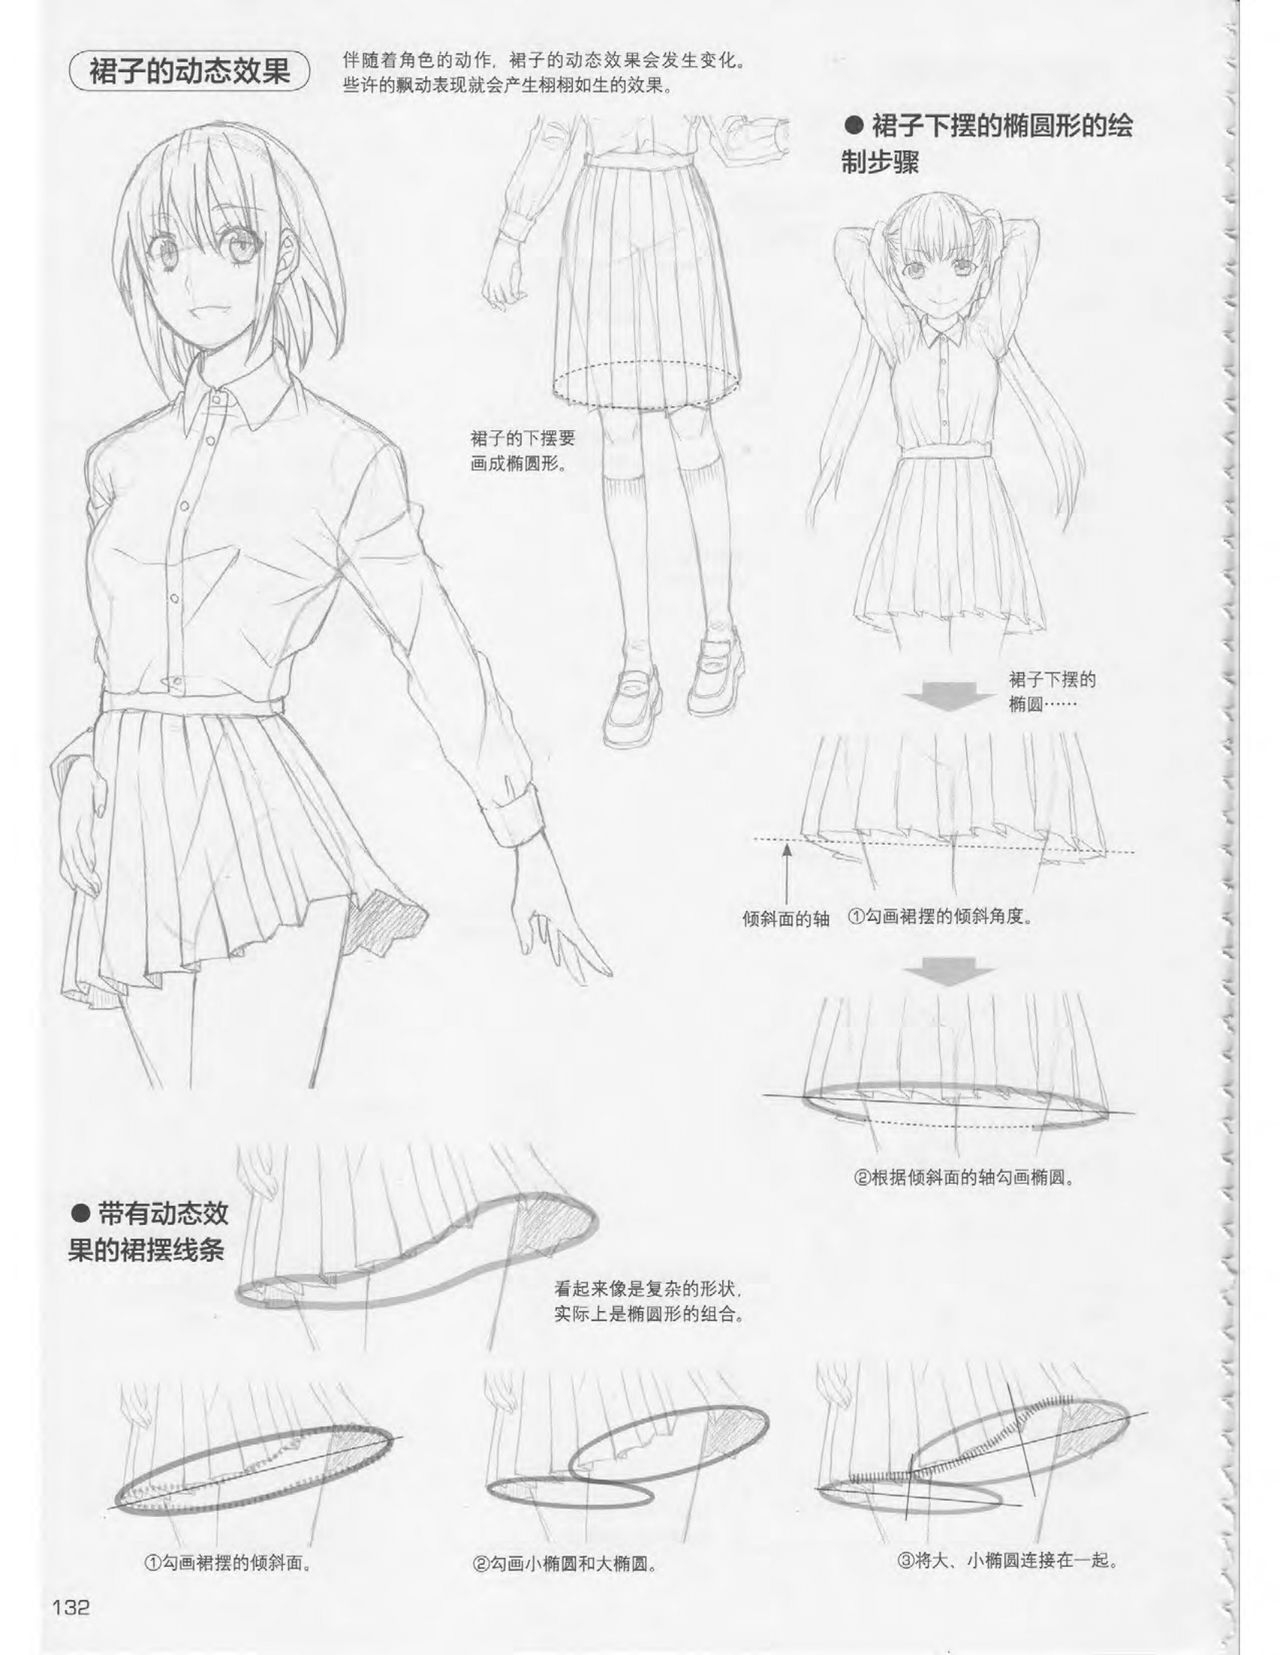 Japanese Manga Master Lecture 3: Lin Akira and Kakumaru Maru Talk About Glamorous Character Modeling 131